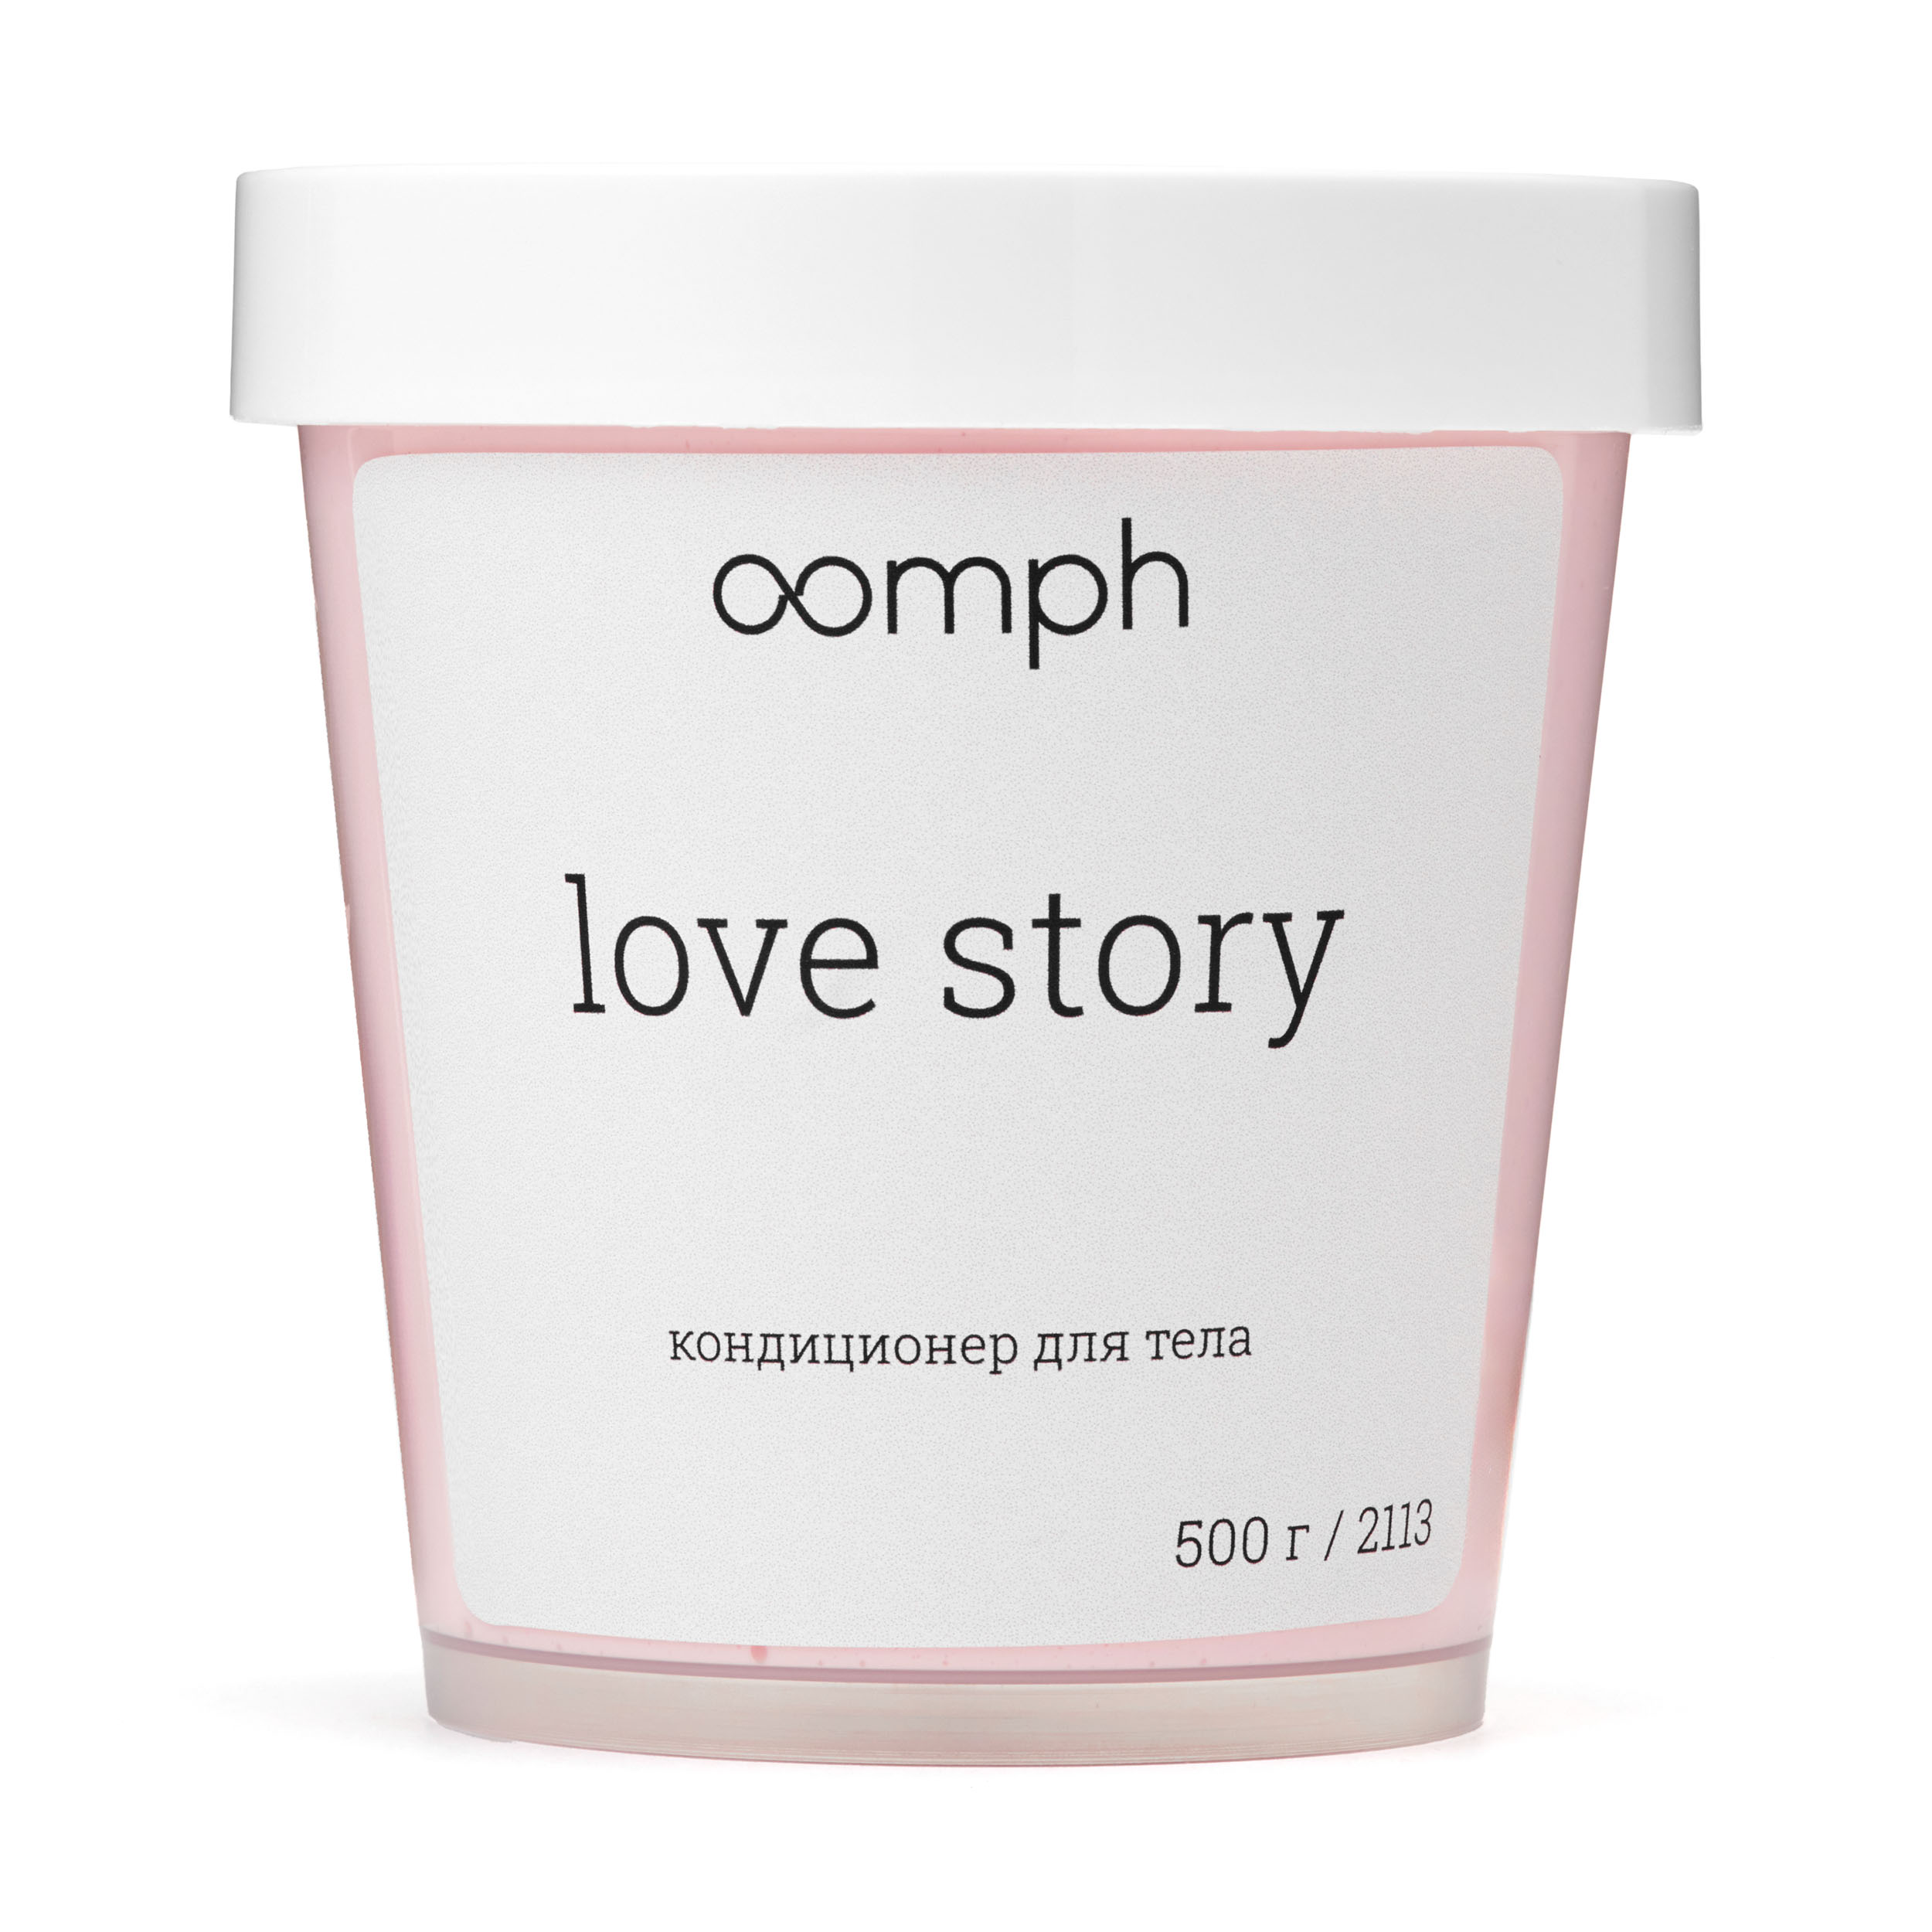 Кондиционер для тела OOMPH Love story 500г ромео и джульетта